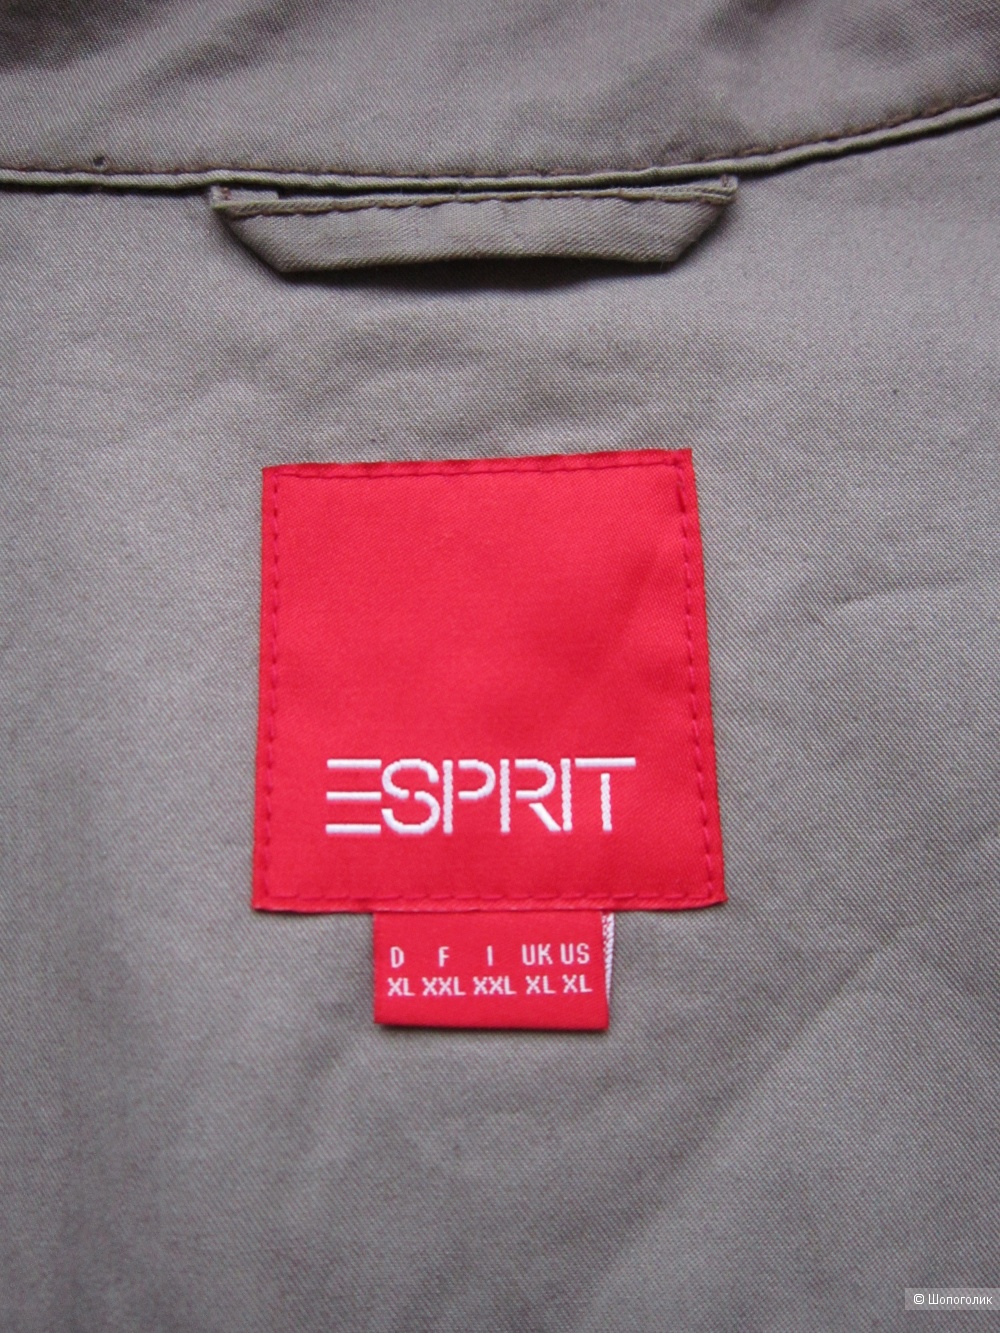 Плащ/ тренч, Esprit, 50 размер.